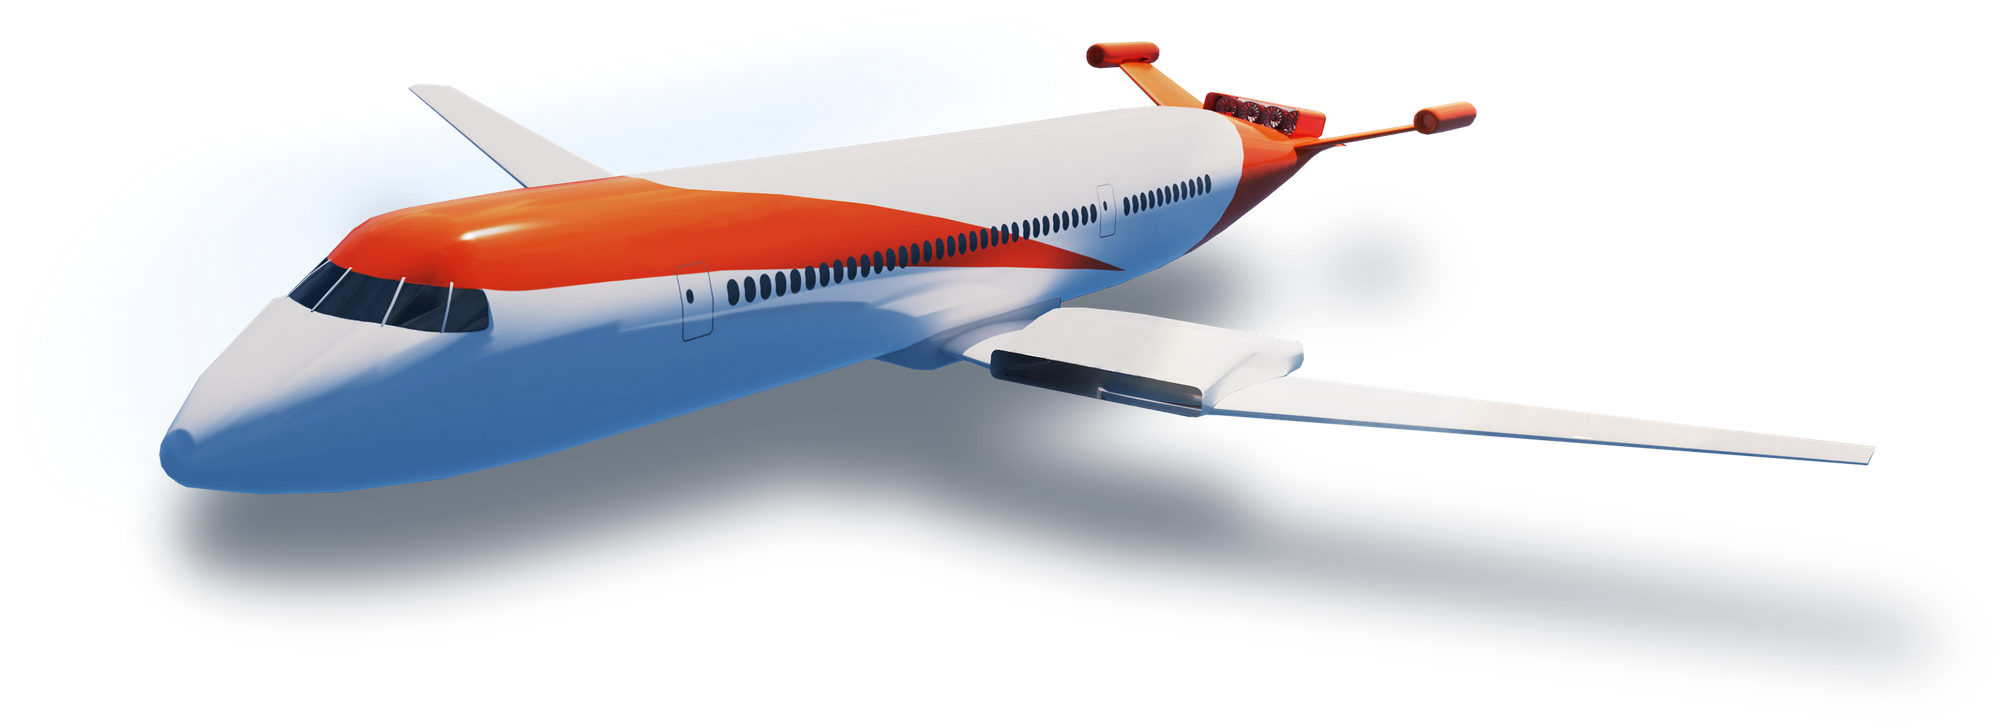 Render CG de un avión usando los motores de Wright